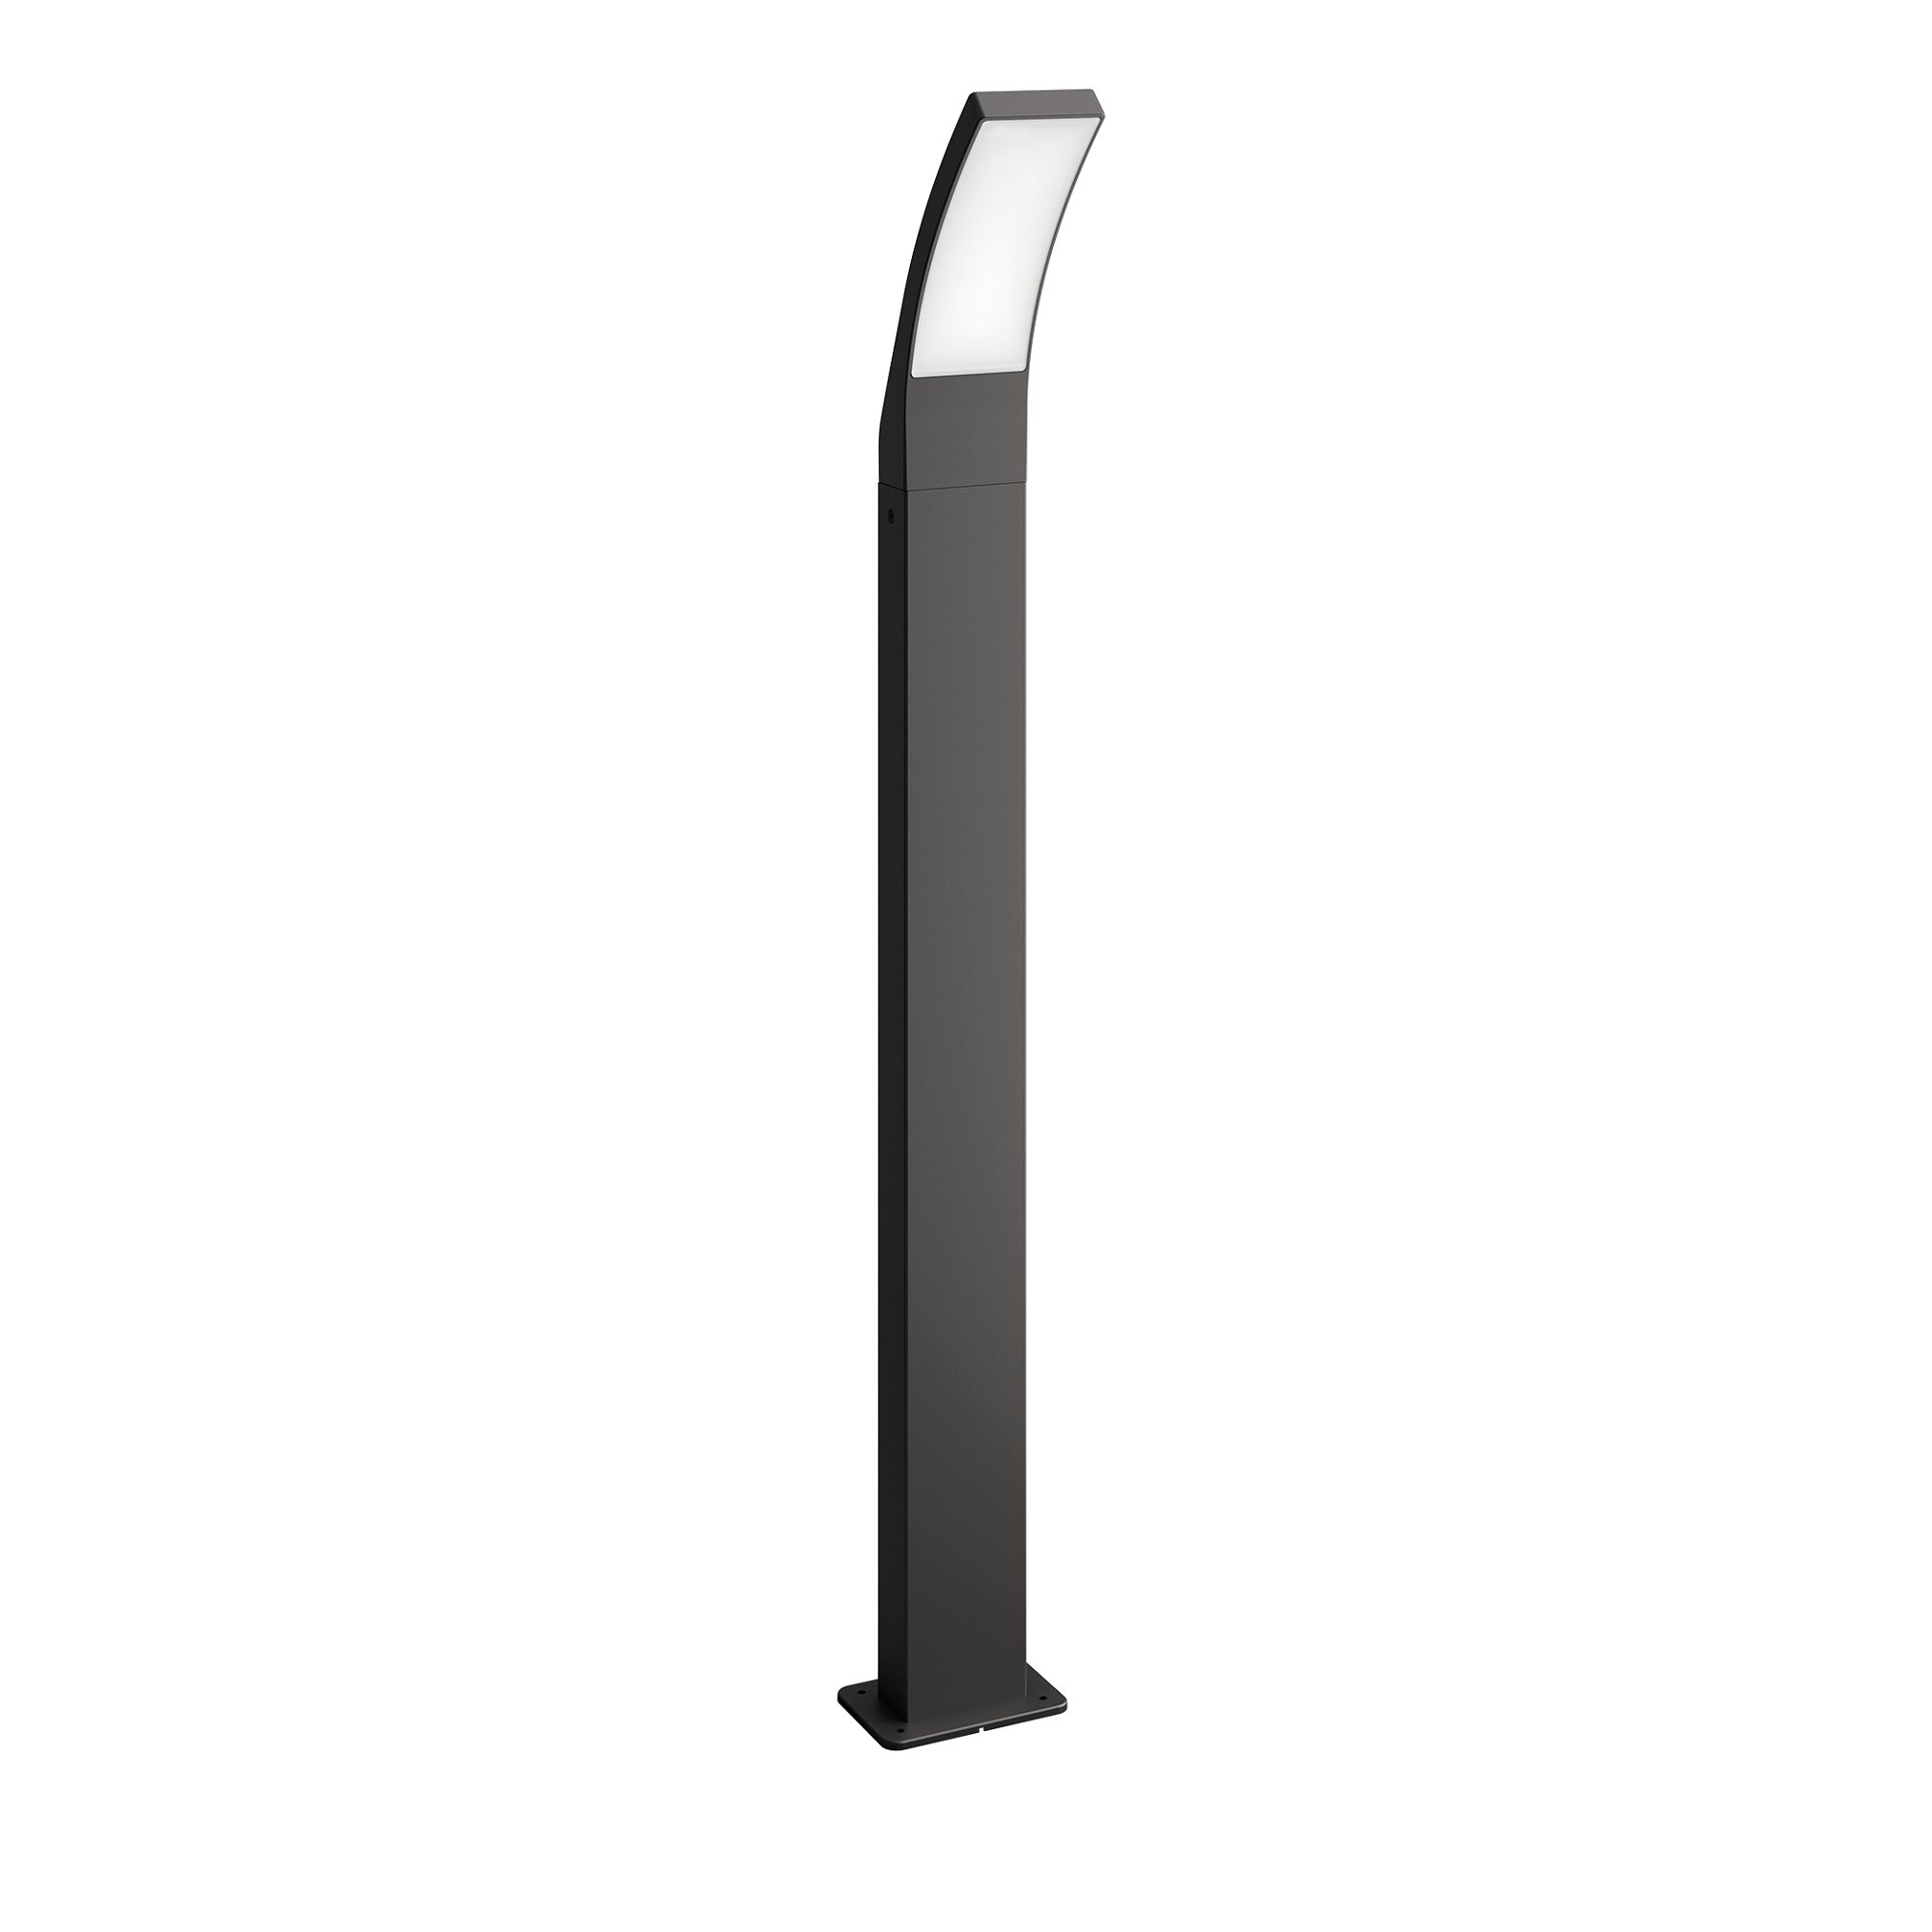 Fotografie Stalp LED iluminat exterior Philips Splay, 12W, 1100 lm, temperatura lumina calda (2700K), IP44, 96 cm, Antracit, clasa energetica E